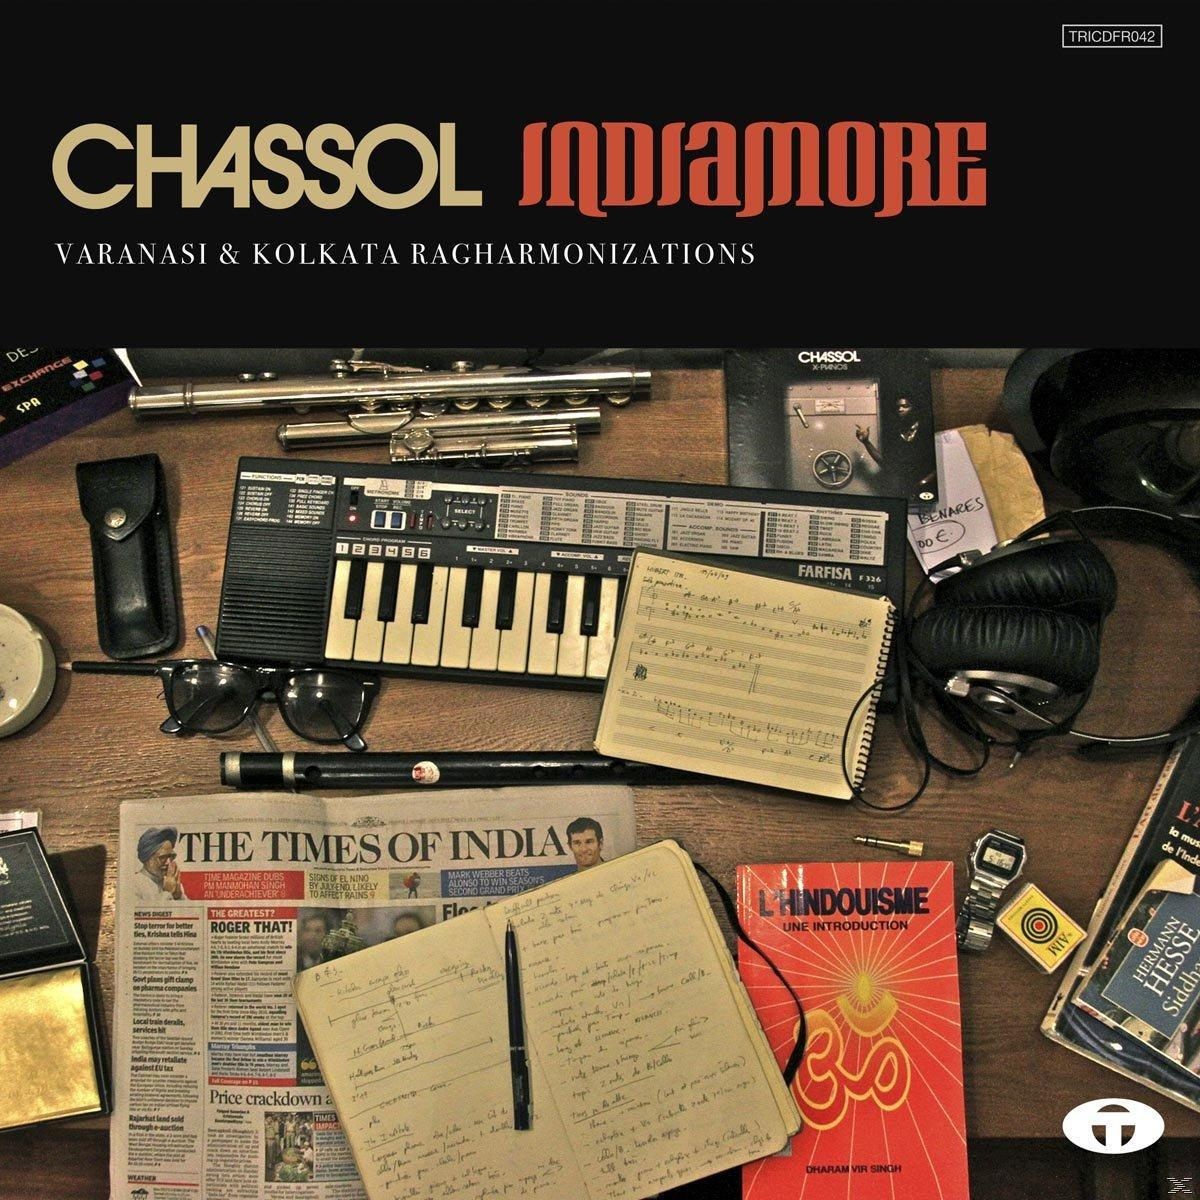 - Indiamore (Vinyl) - Chassol